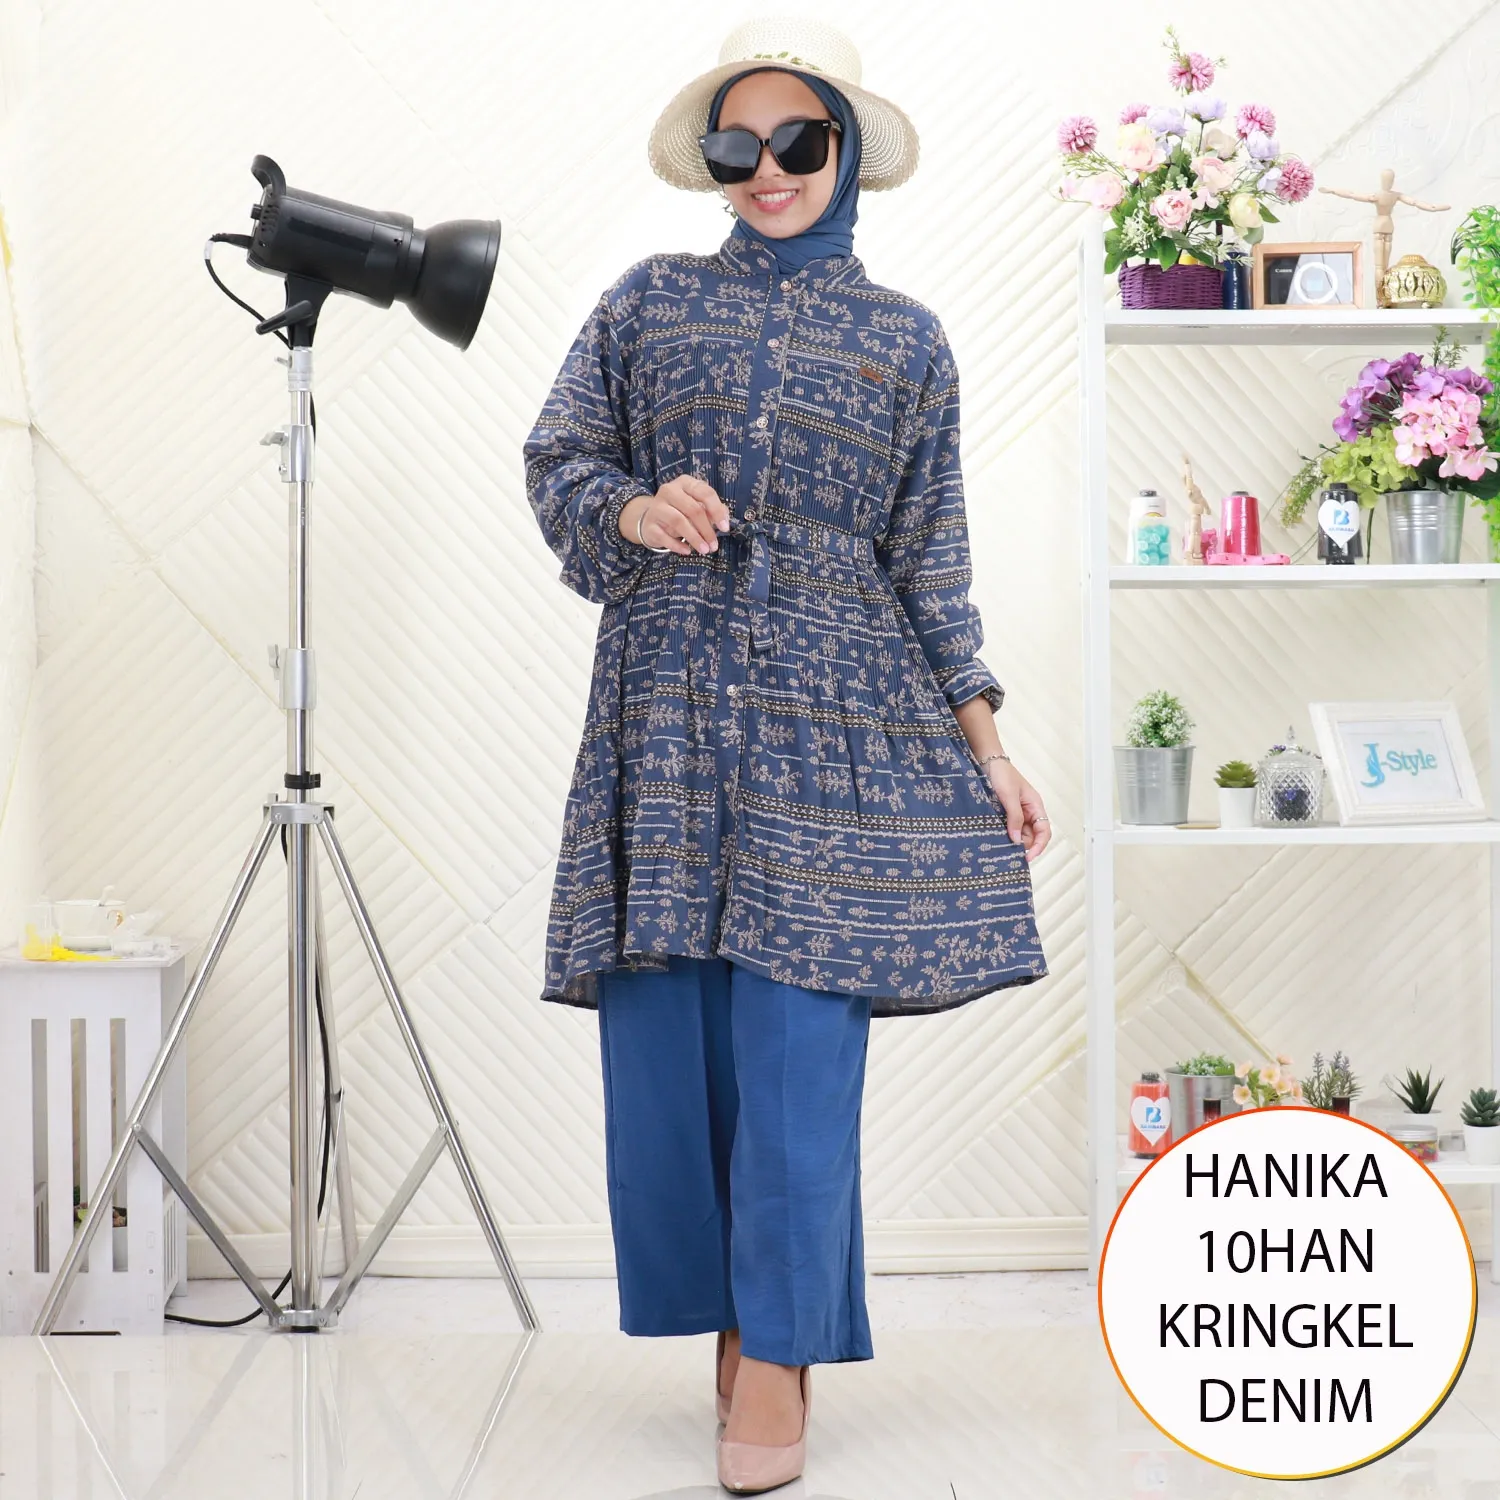 Hanika One Set Tunik Kringkel Plisket Motif Printing Busui Friendly